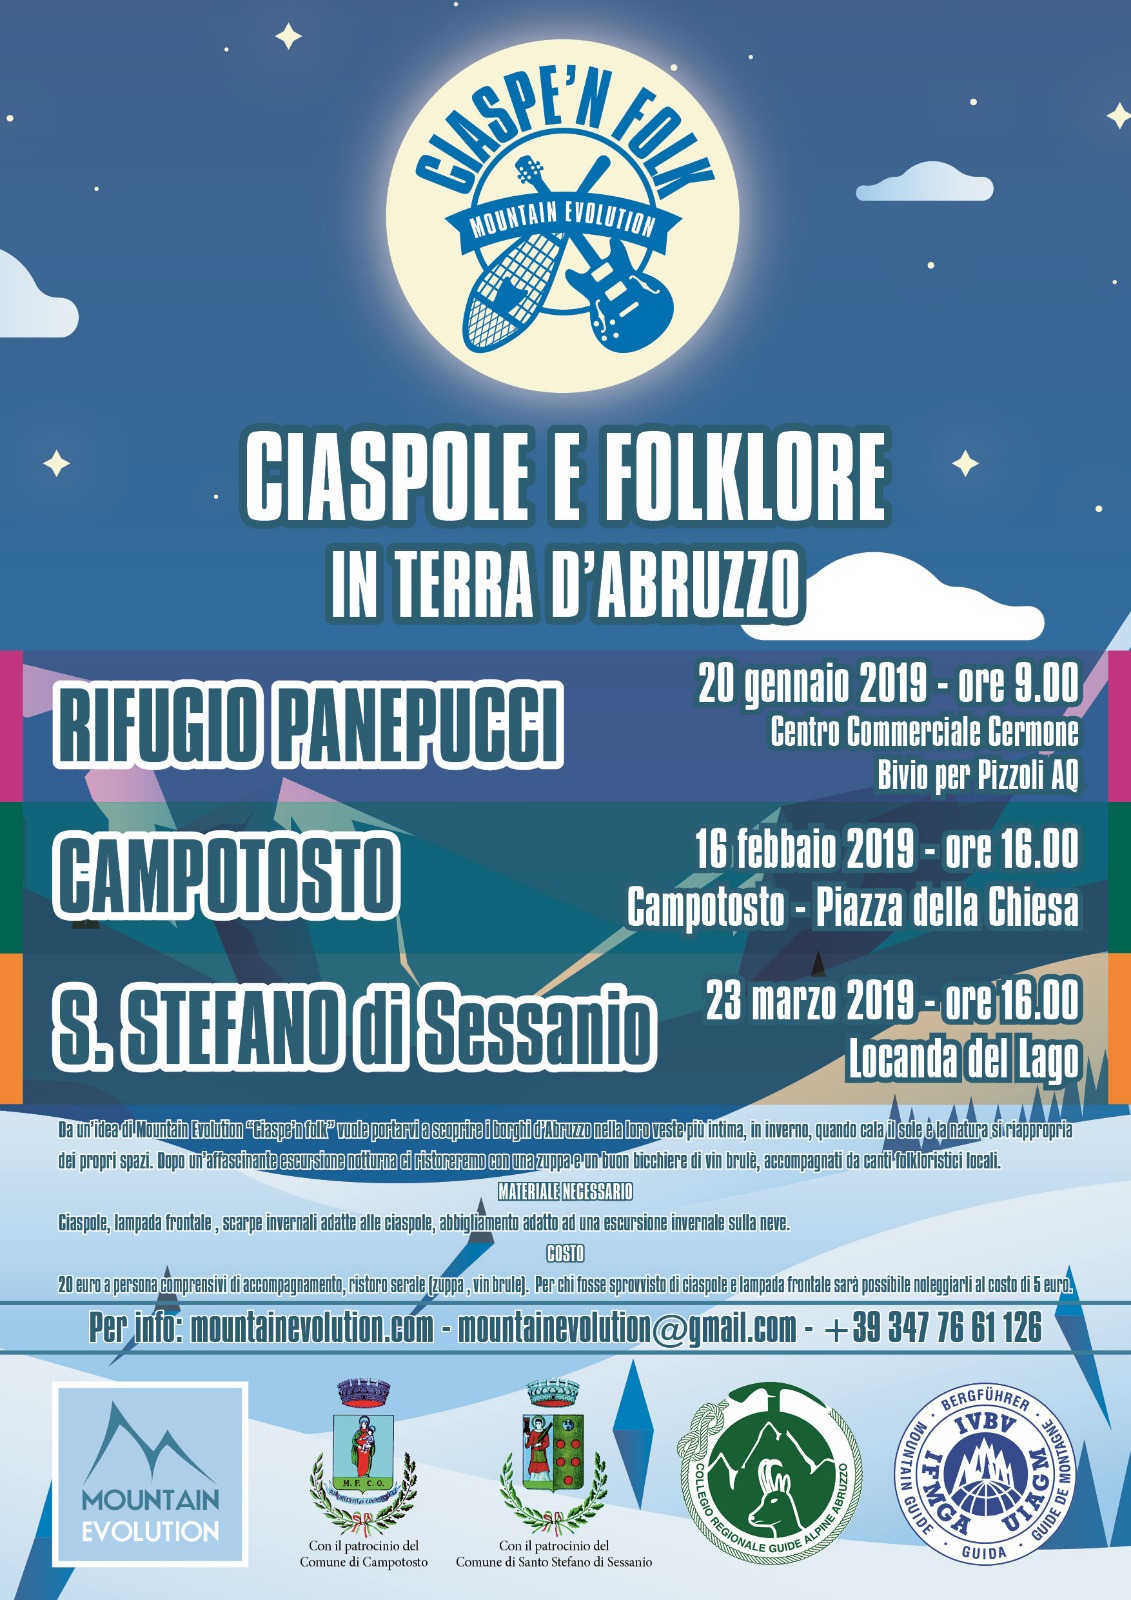 Al via seconda edizione di Ciaspe'n folk ciaspole e folklore in terra d'Abruzzo